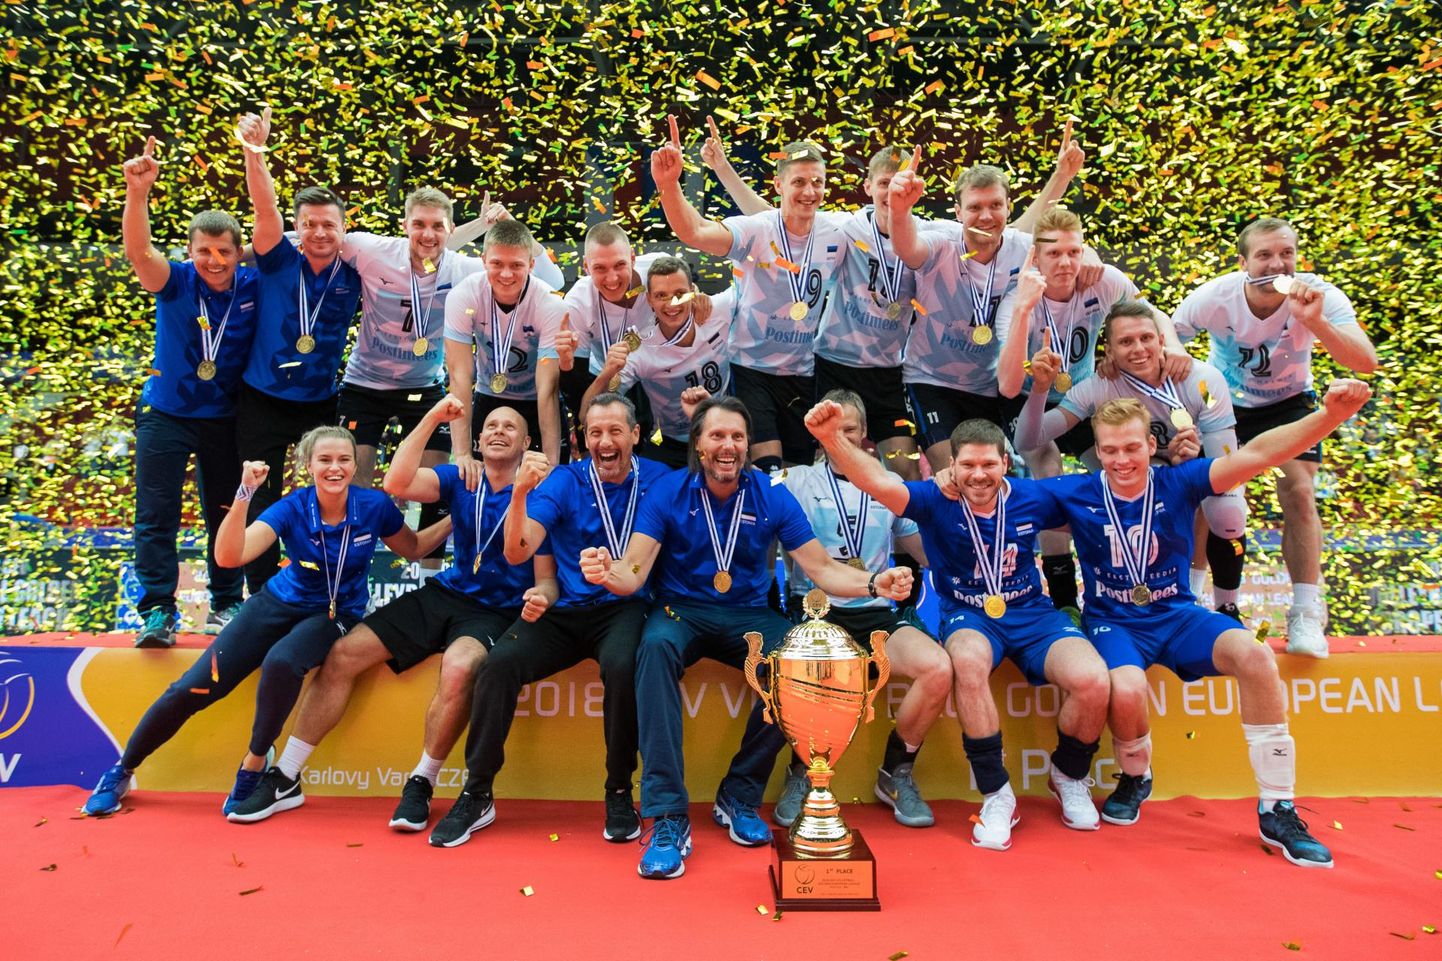 Aasta eest võitis Eesti Tšehhis Kuldliiga turniiri. Kuidas läheb täna-homme kodus?